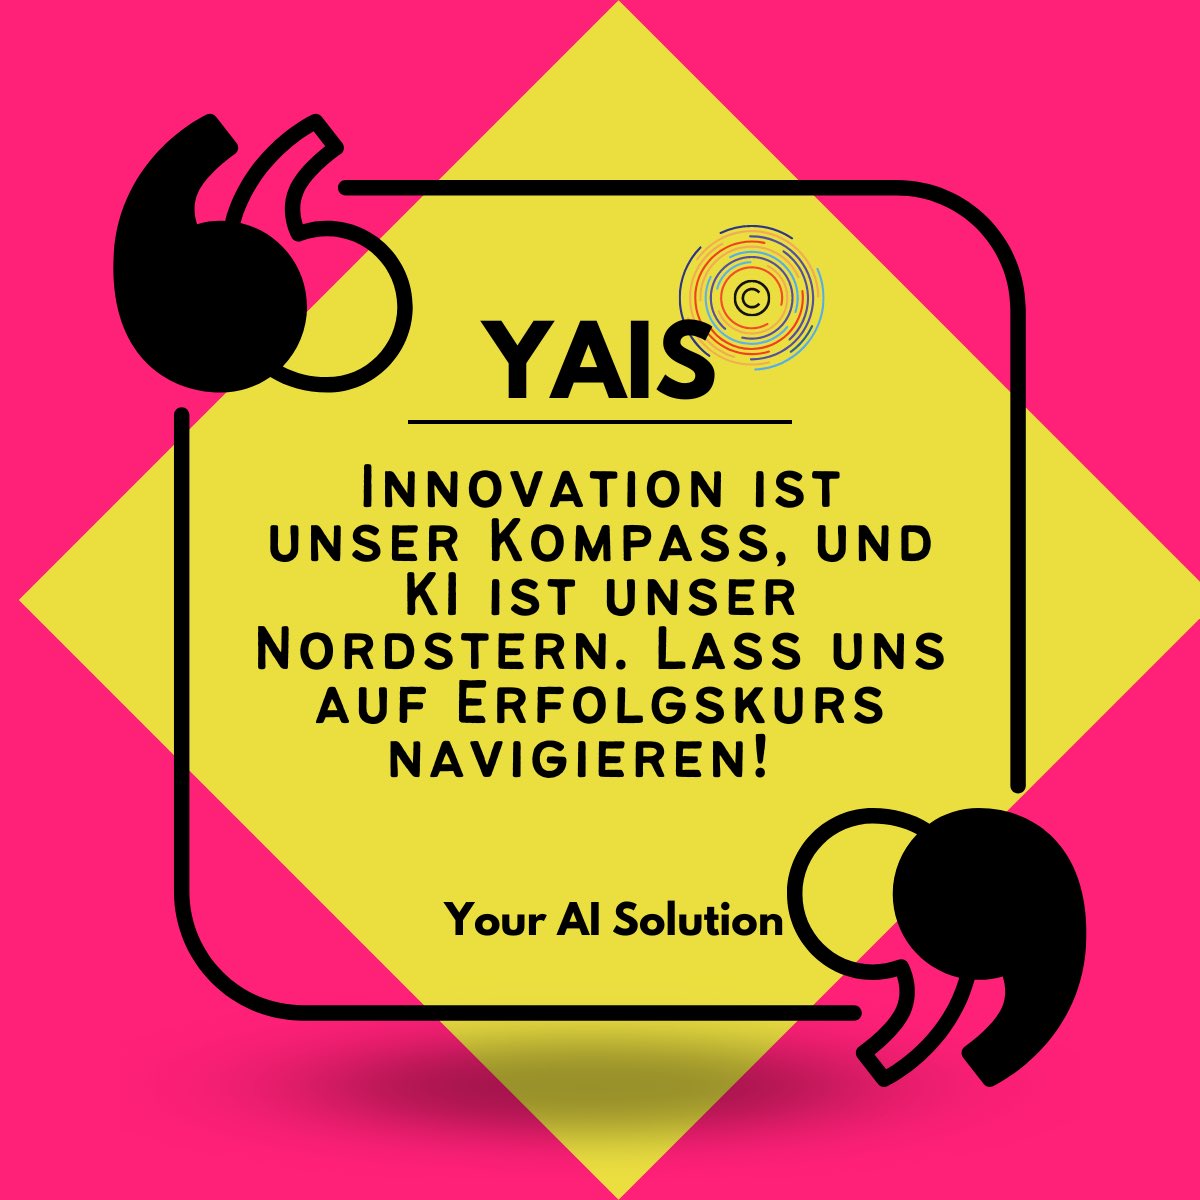 Was bedeutet Innovation für dich? Wie siehst du die Rolle von KI bei der Gestaltung unserer Zukunft? Diskutiere mit uns! Innovation 🧭🌟 #Innovation #Nordstern #Erfolgskurs #KI #Zukunft